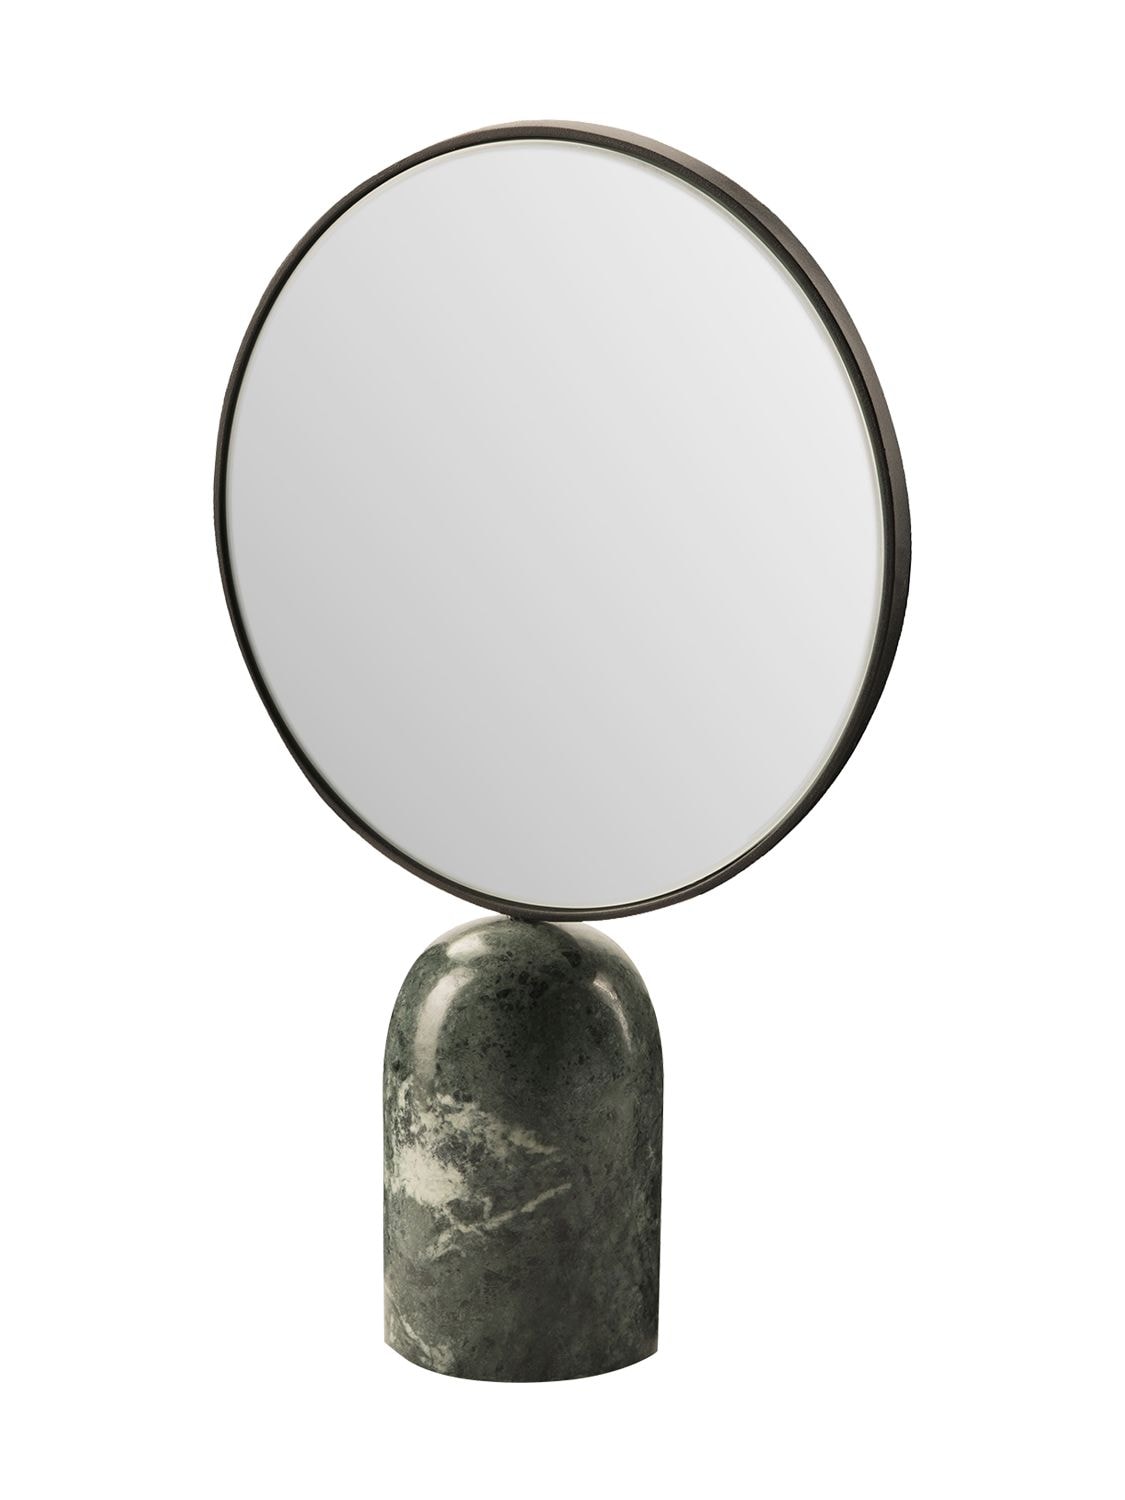 Polspotten Round Mirror W/ Green Marble